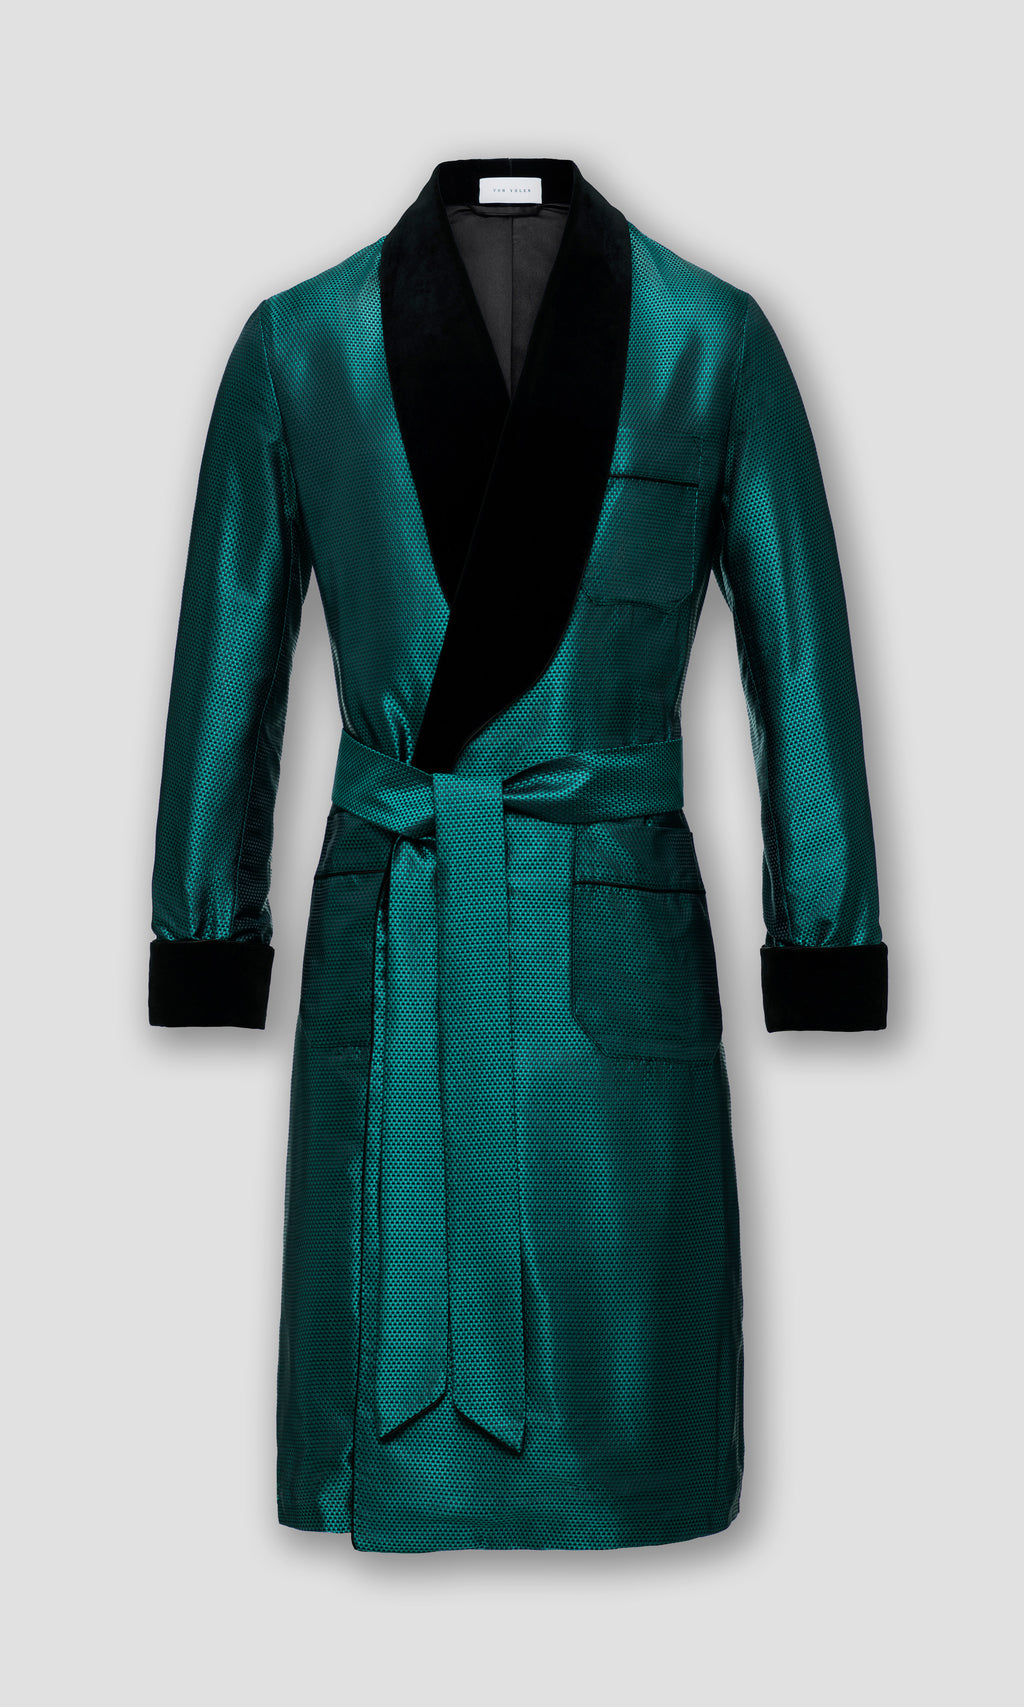 .com: emerald green silk robes